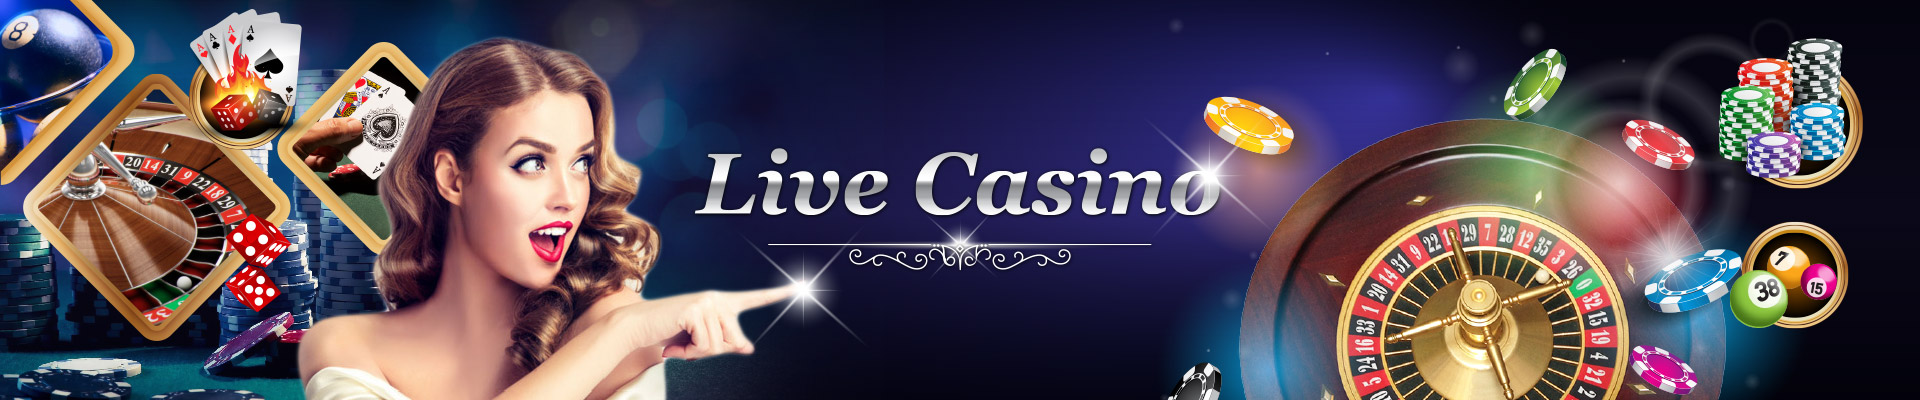 NetBet Casino - No Deposit Bonus & Promo Code | 